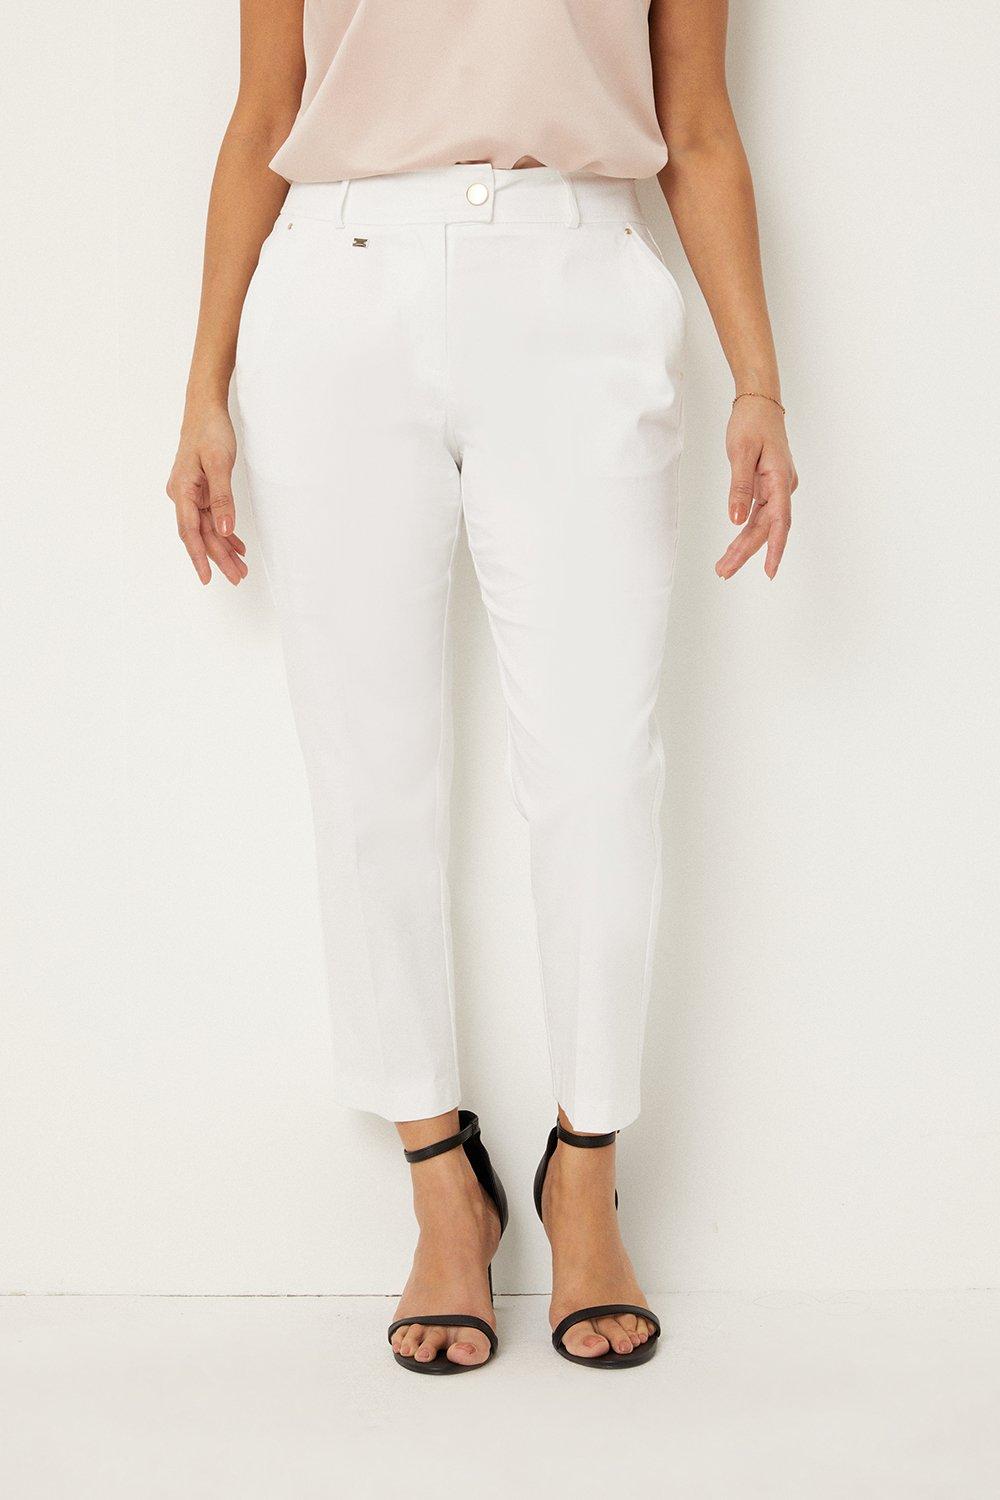 цена Укороченные брюки стрейч для миниатюрных размеров Wallis, белый